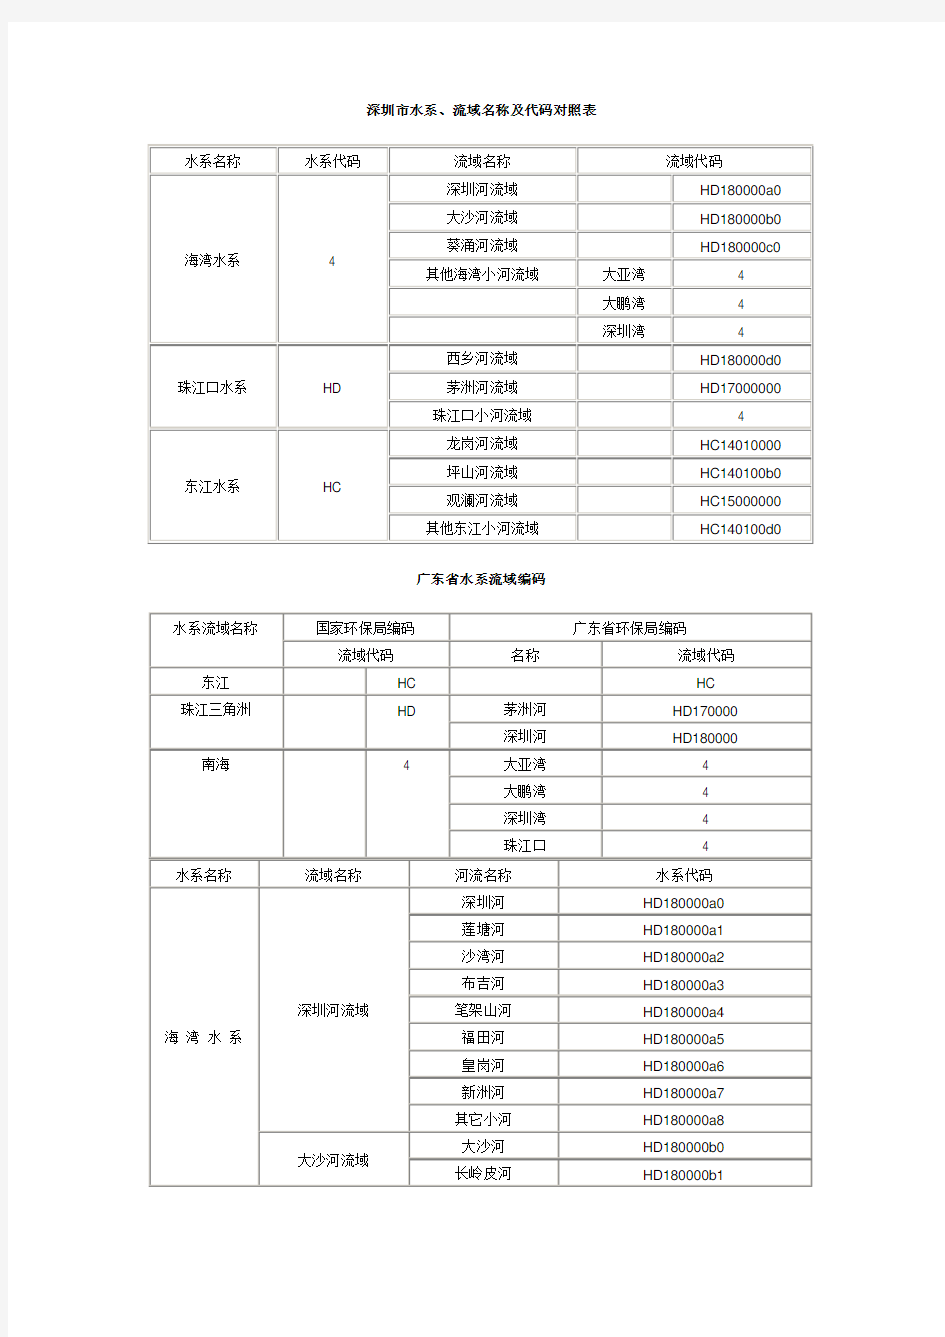 深圳水系流域名称及代码对照表